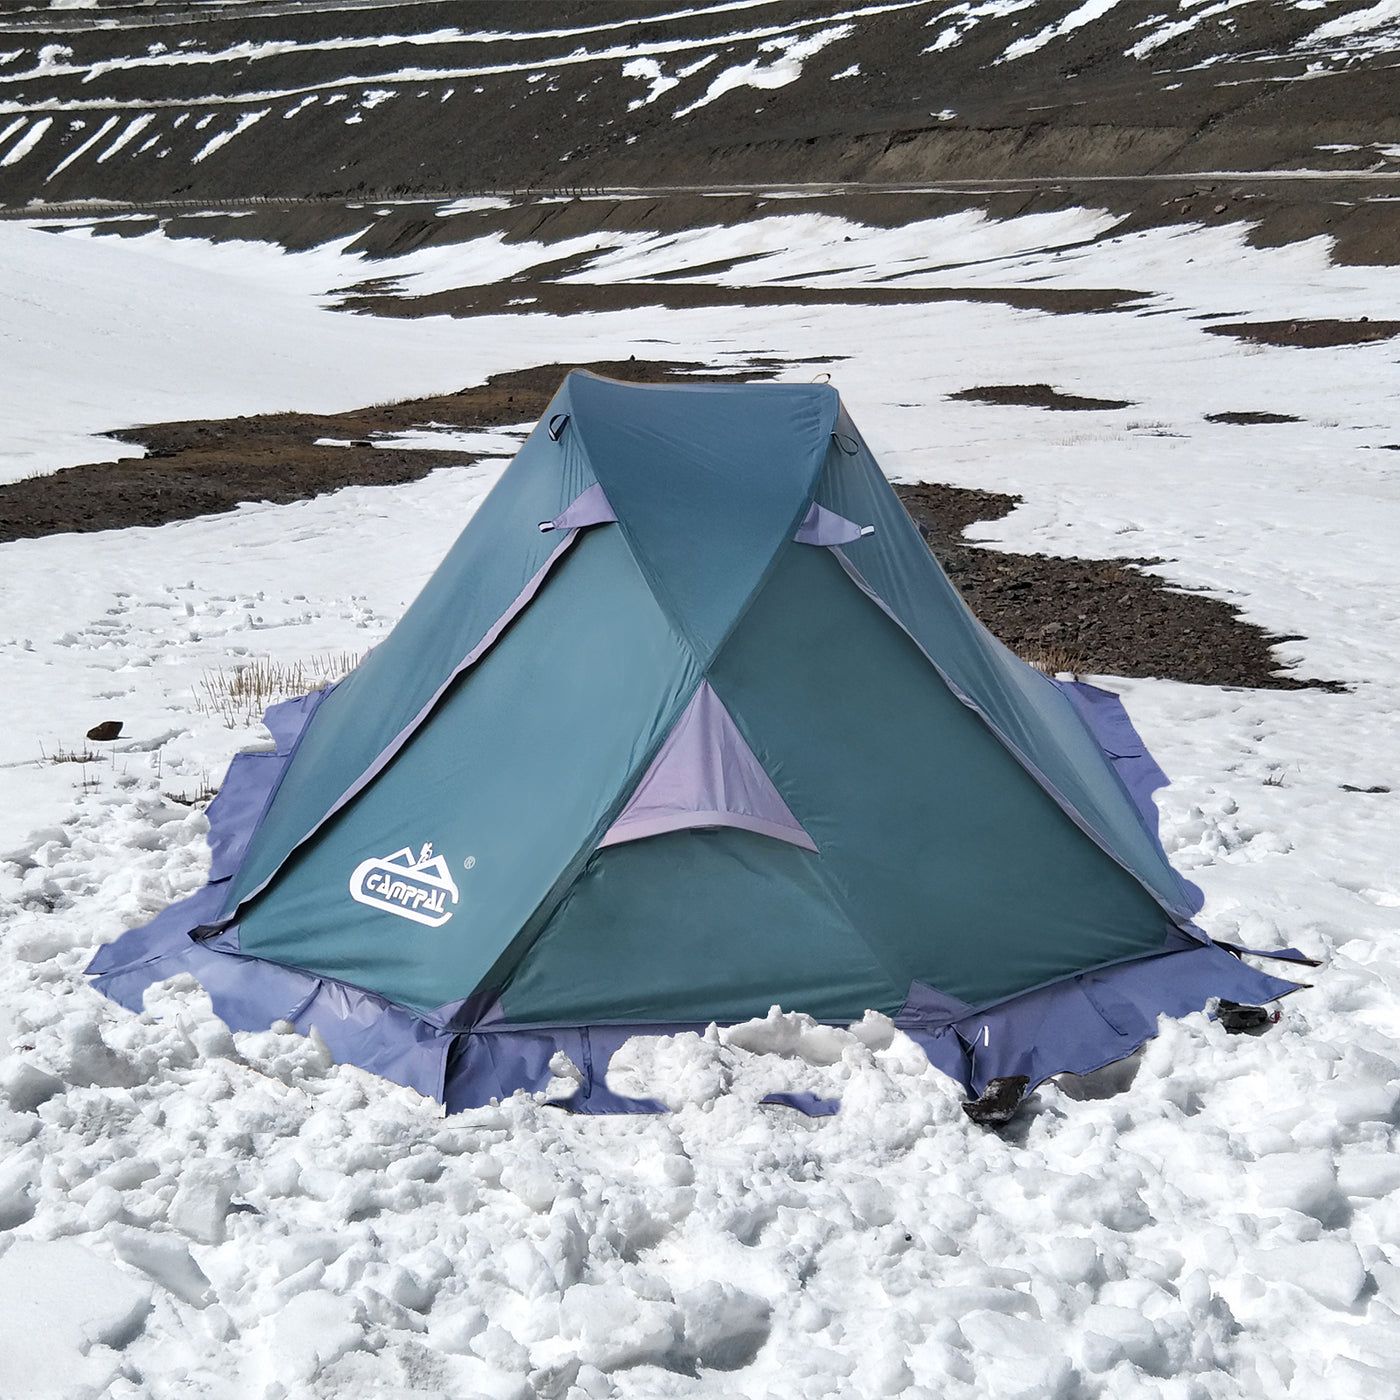 Camppal Professional One Person 4 Seasons Tienda de campaña ligera para mochileros con agua/lluvia/viento/tormenta/nieve, ideal para acampar solo, senderismo, trekking